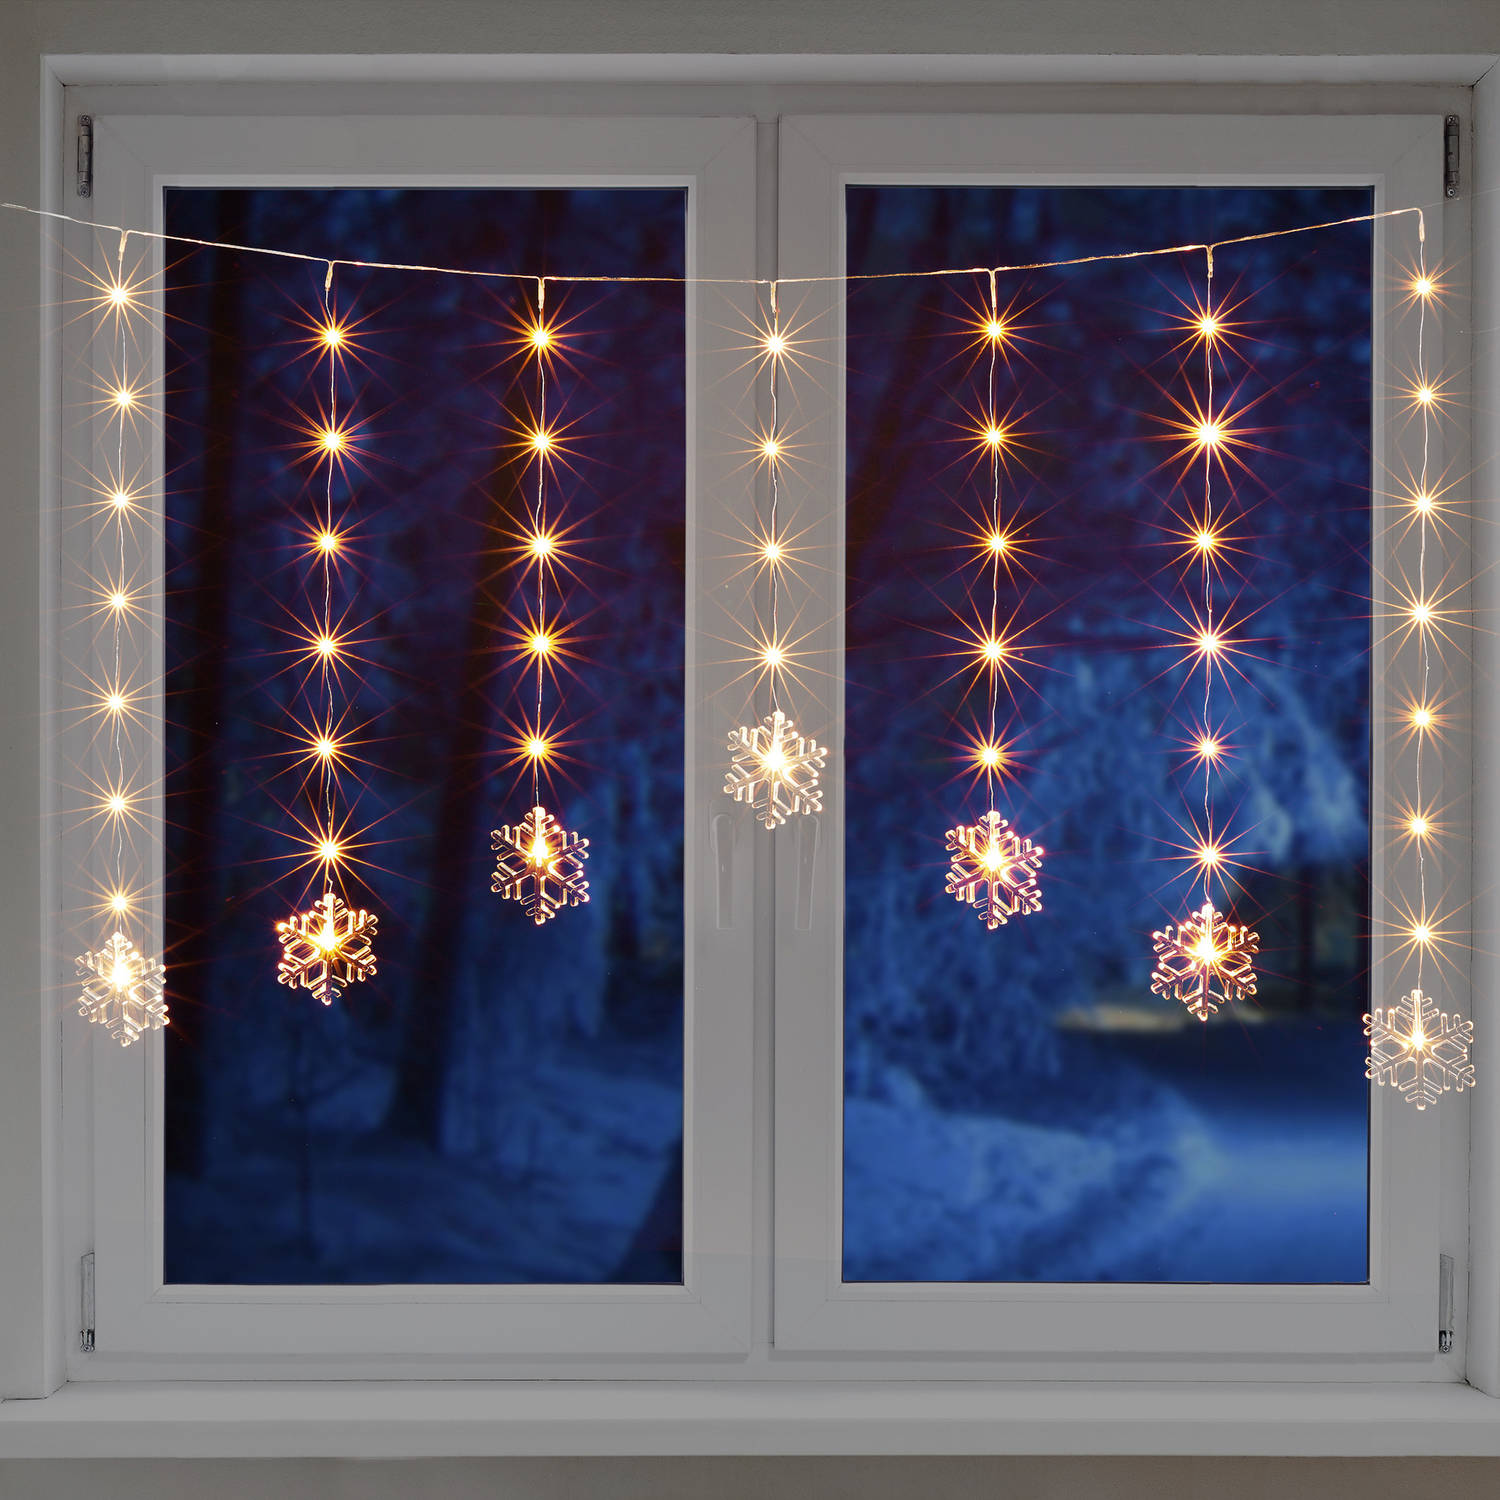 HI raamverlichting lichtsnoer - met sneeuwvlokken lampjes - 140 cm - Lichtsnoeren